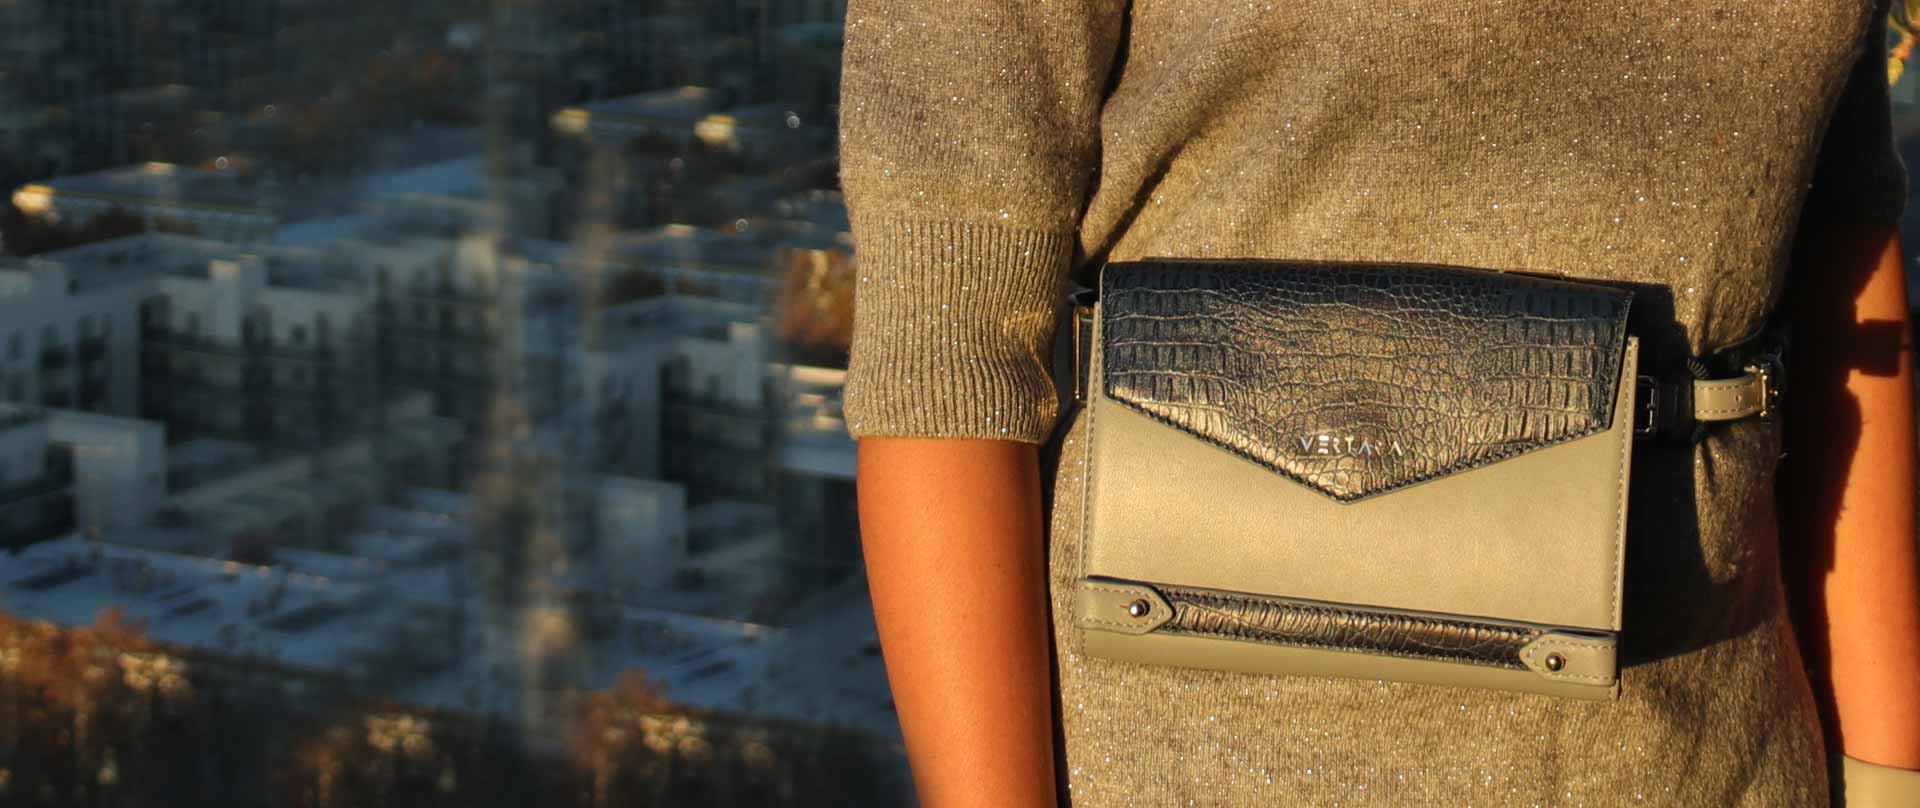 Ember belt bag in grey & navy leather